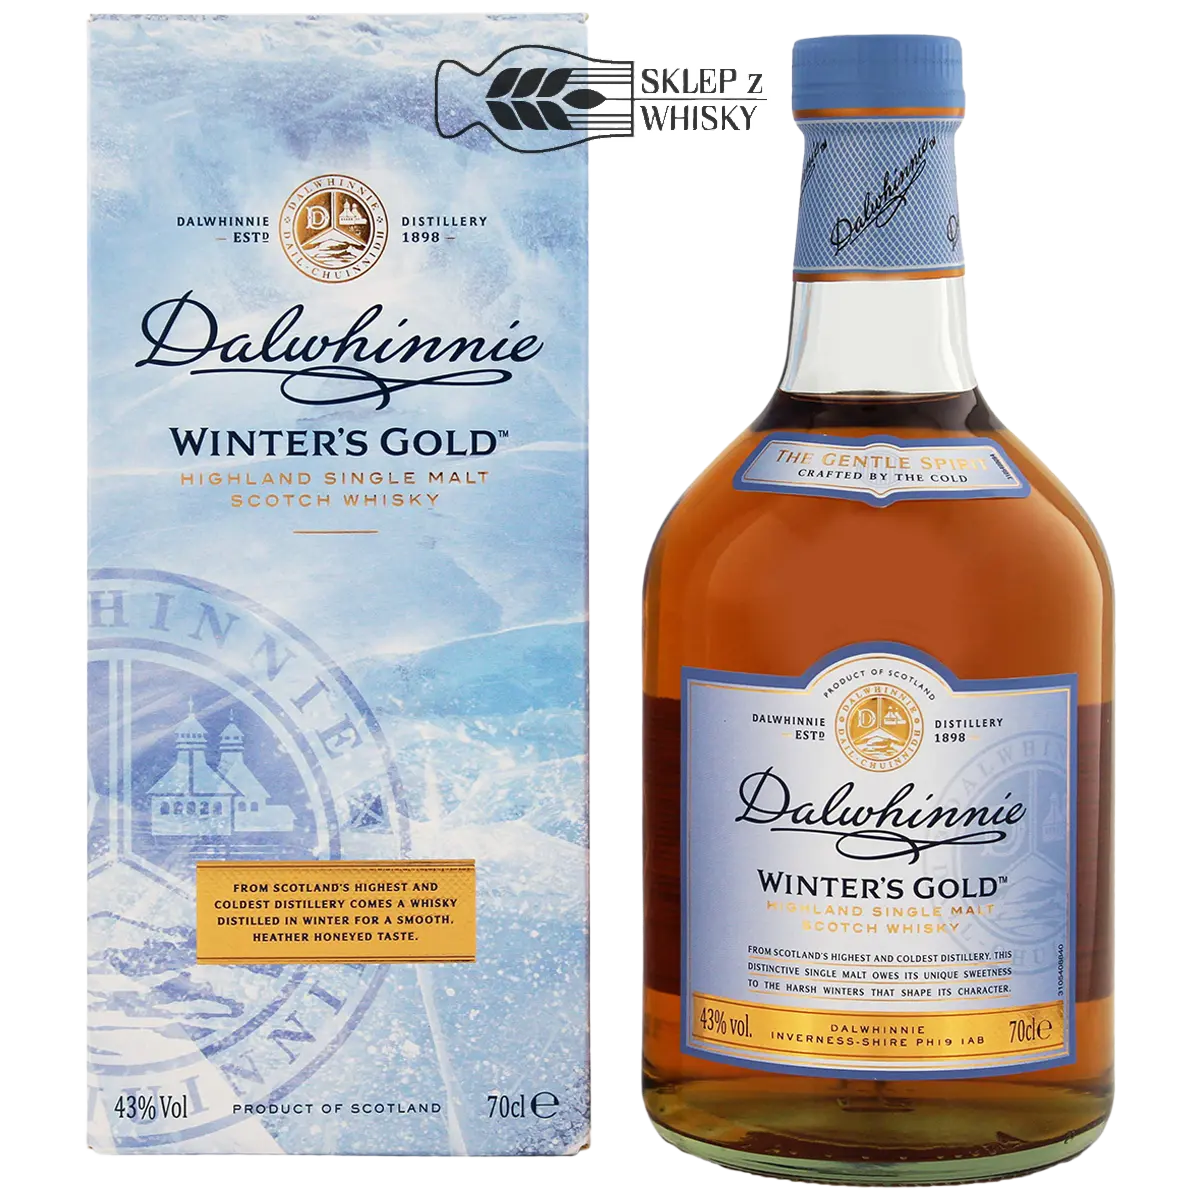 Dalwhinnie Winter's Gold - szkocka whisky single malt z regionu Highland, 700 ml, w pudełku